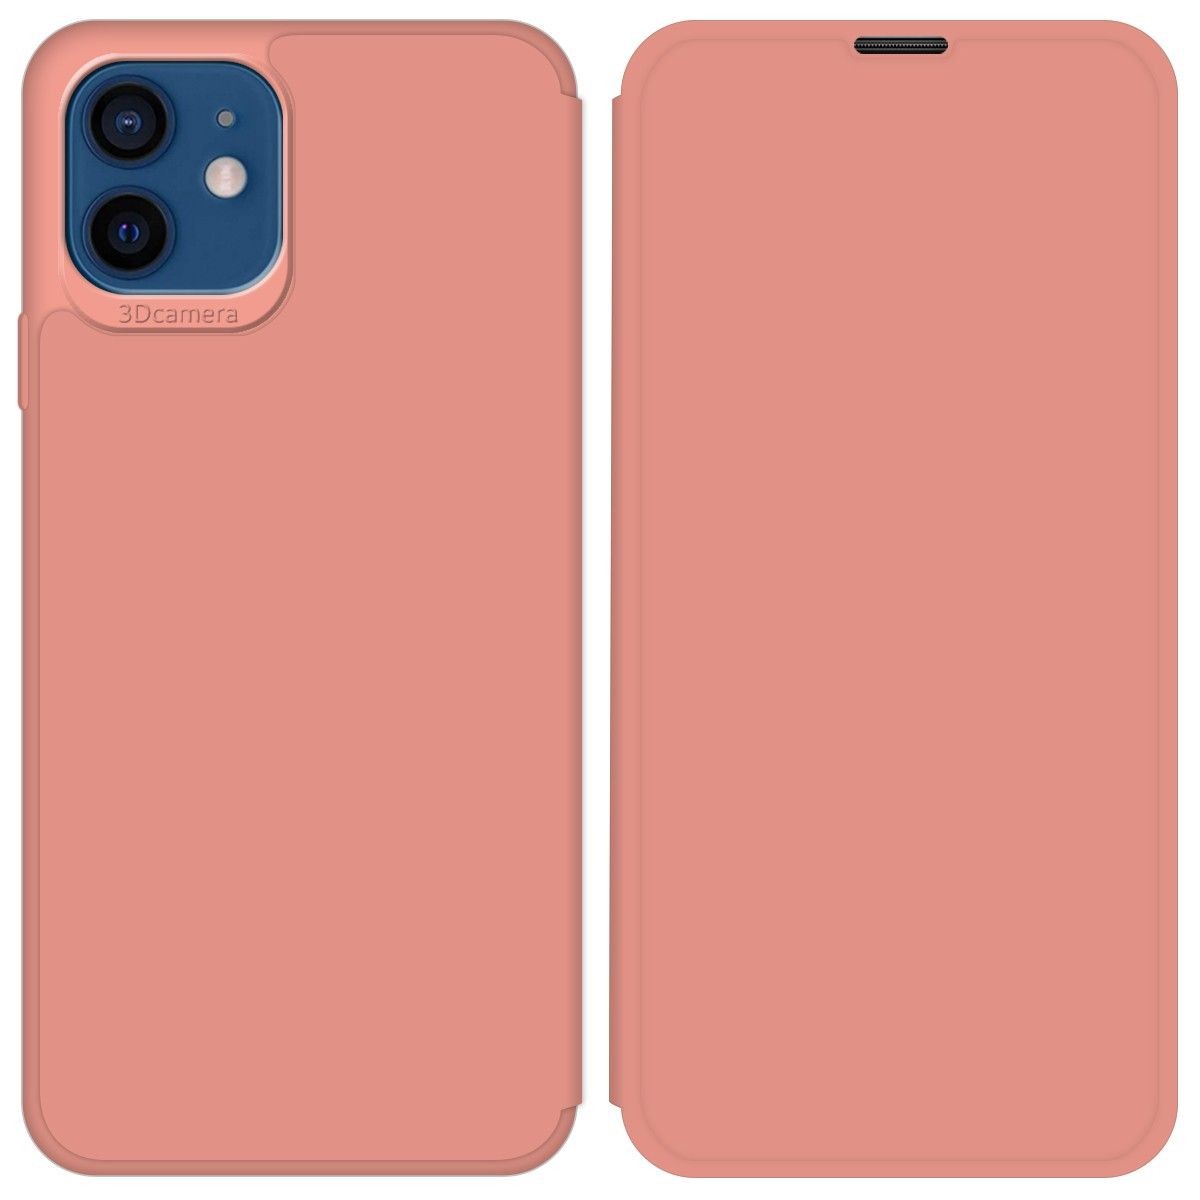 Funda Silicona Líquida con Tapa para Iphone 12 / 12 Pro (6.1) color Rosa Pastel